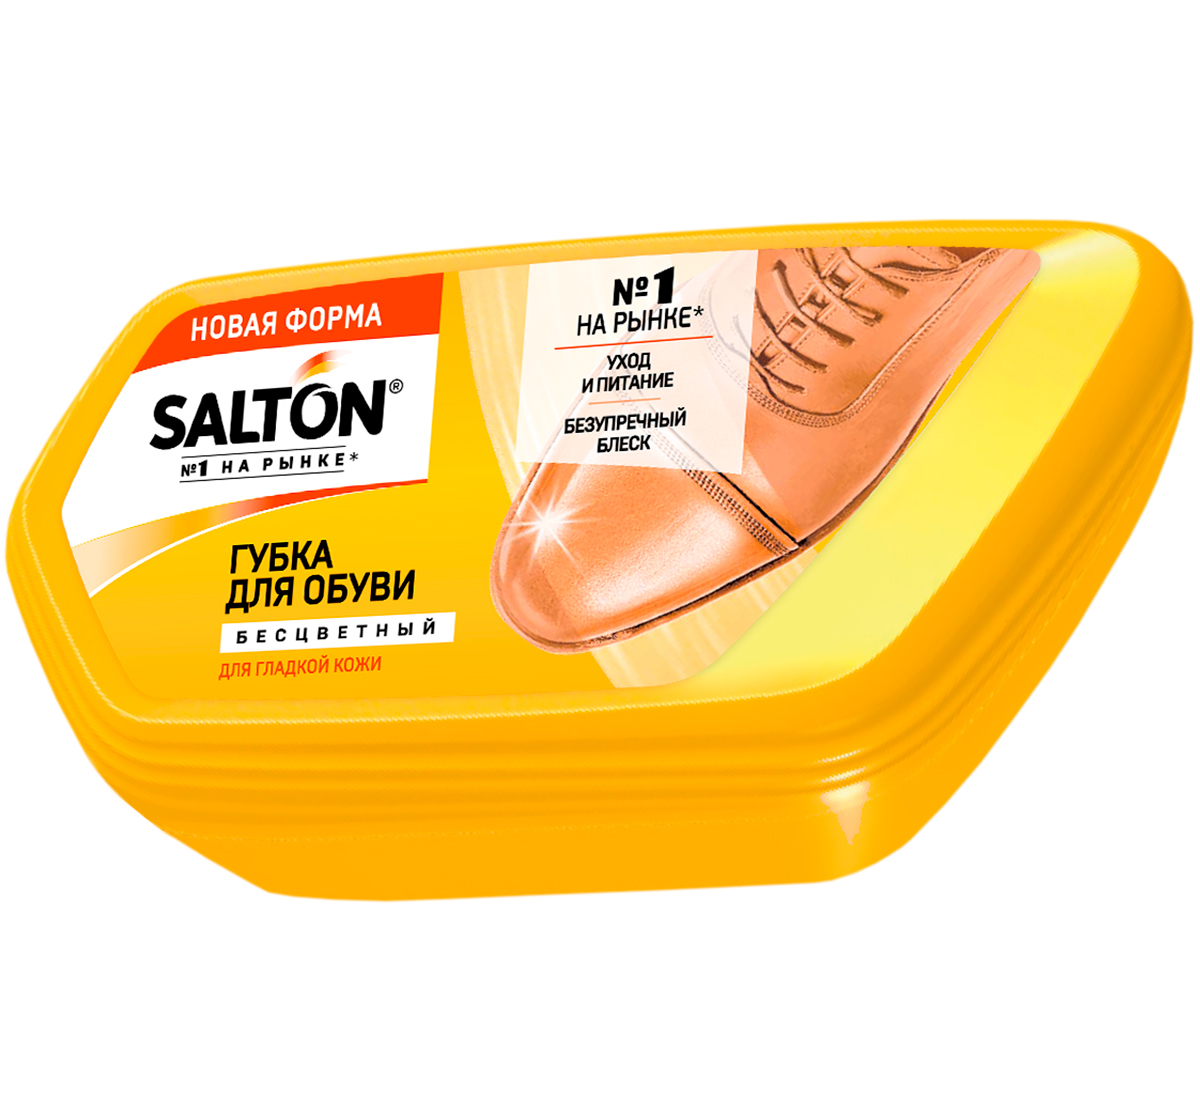 Губка для обуви из гладкой кожи Salton бесцветная